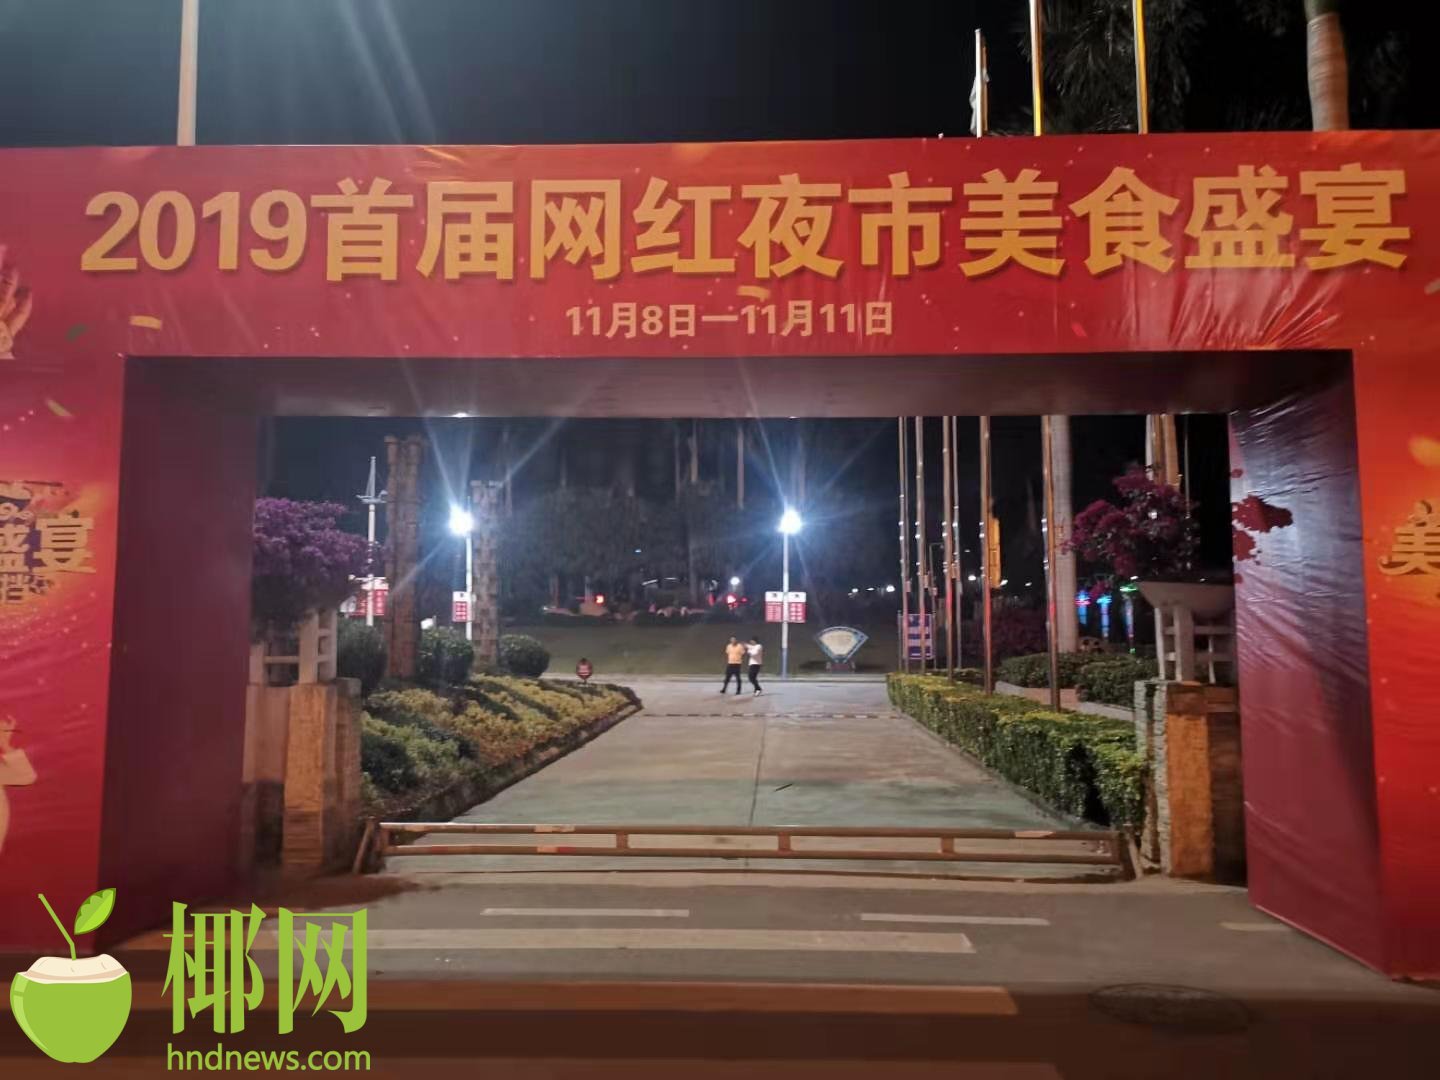 2019乐乐美食购物嘉年华“首届网红夜市美食盛宴”活动成功举办